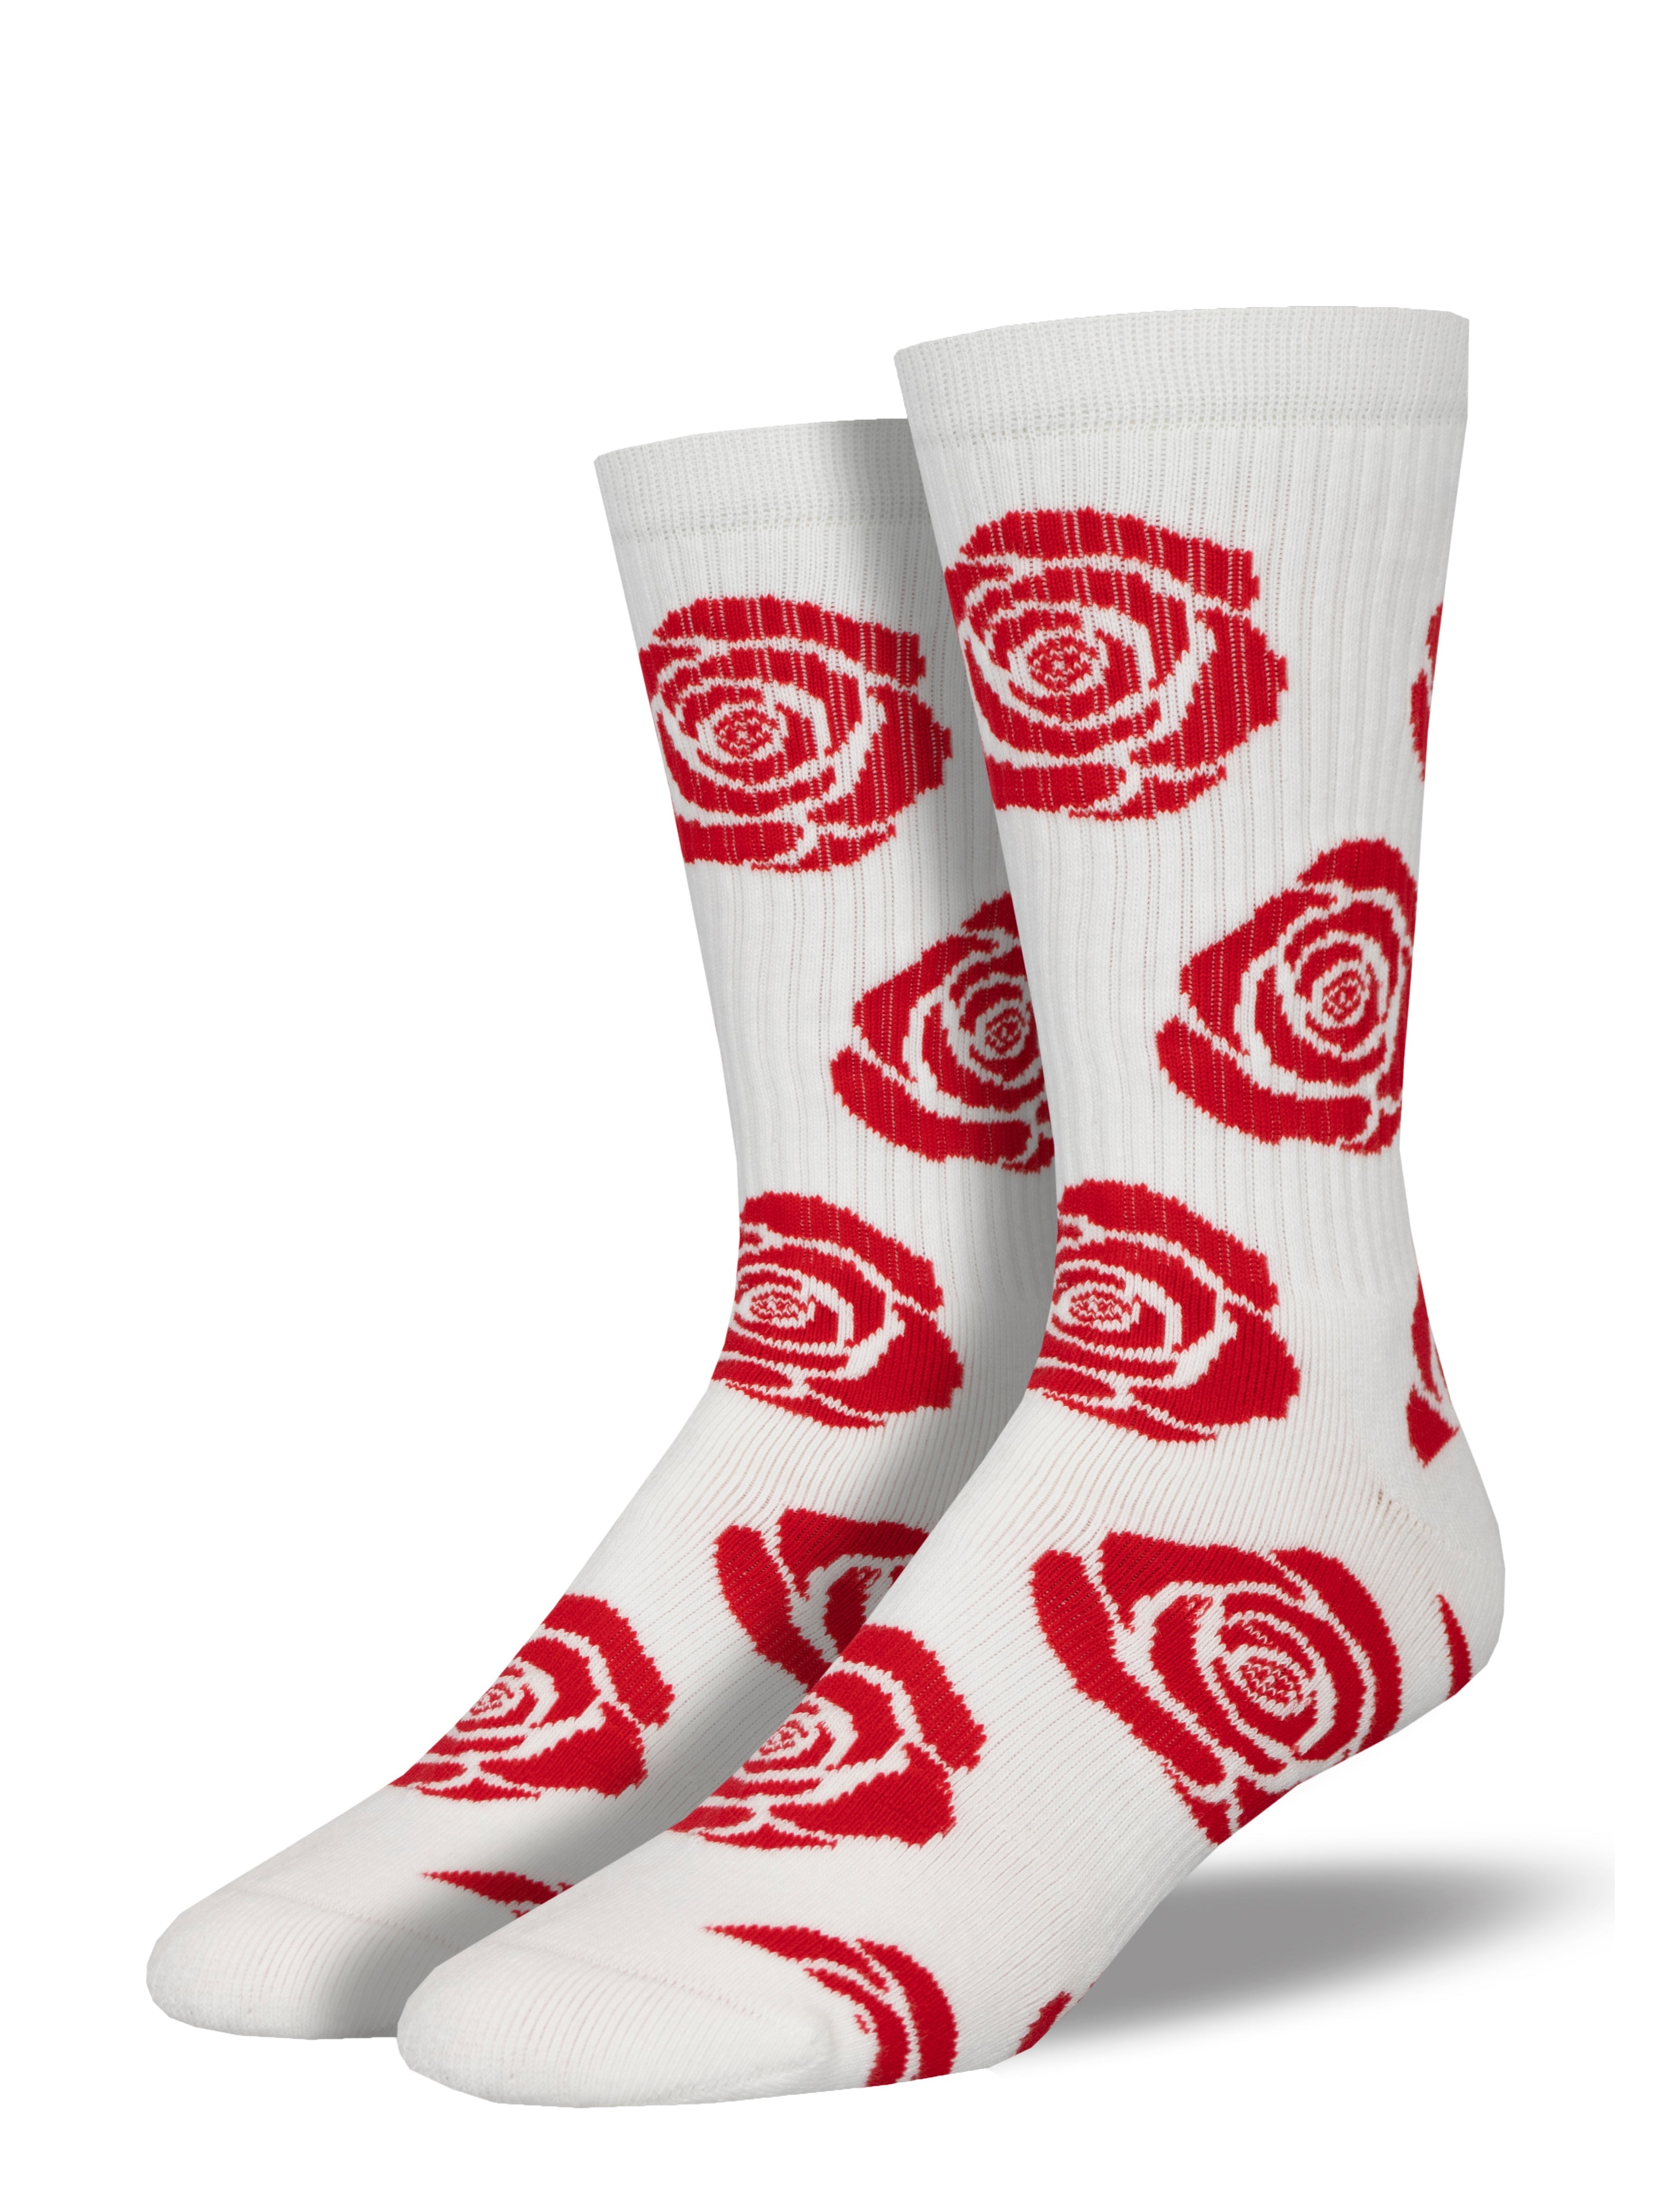 NO BS - "La Rosa" Athletic Socks